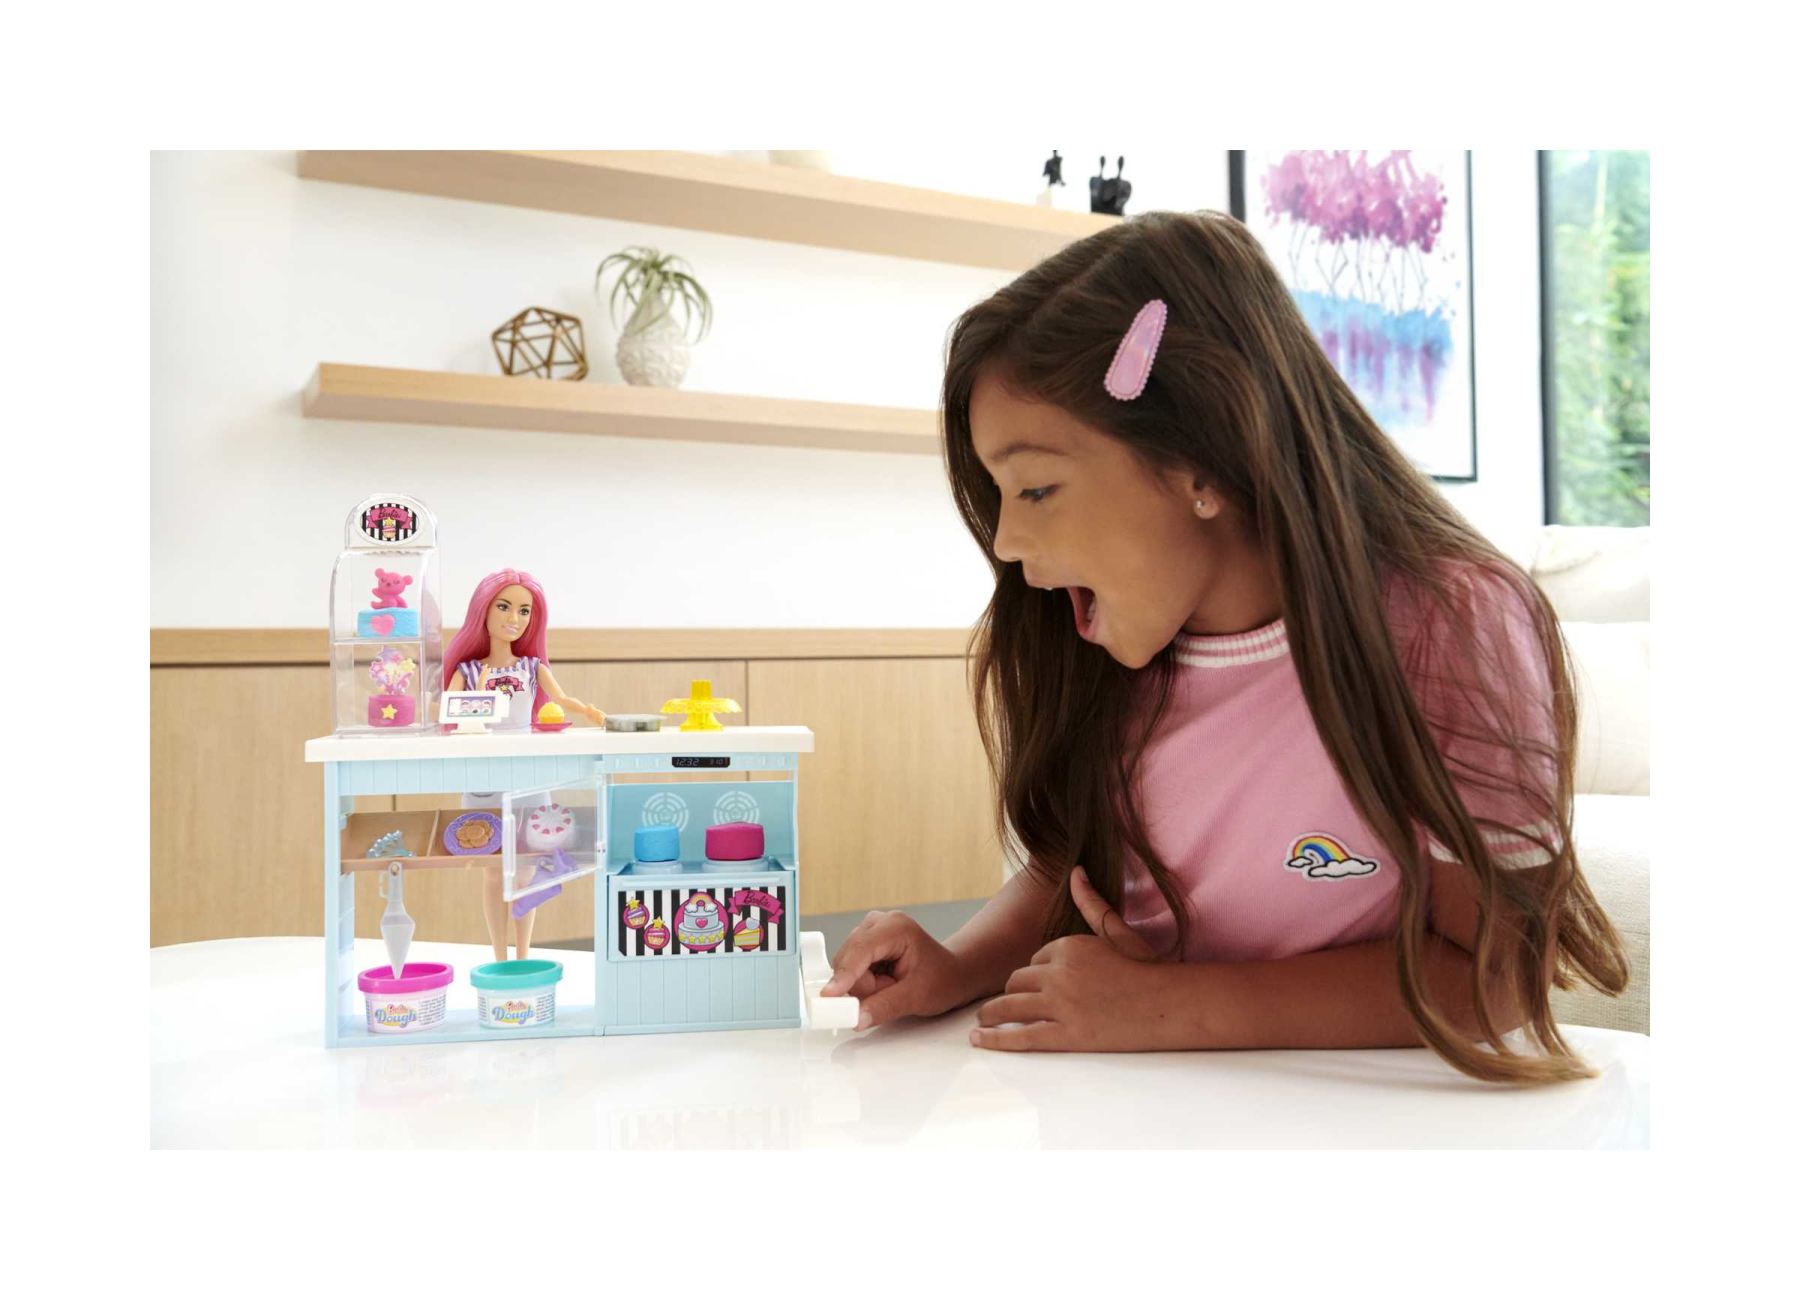 Barbie pasticceria playset con bambola petite capelli rosa, +20 pezzi realistici: 2 barattolini di pasta modellabile, decorazioni e altri accessori, giocattolo per bambini 3+ anni - Barbie